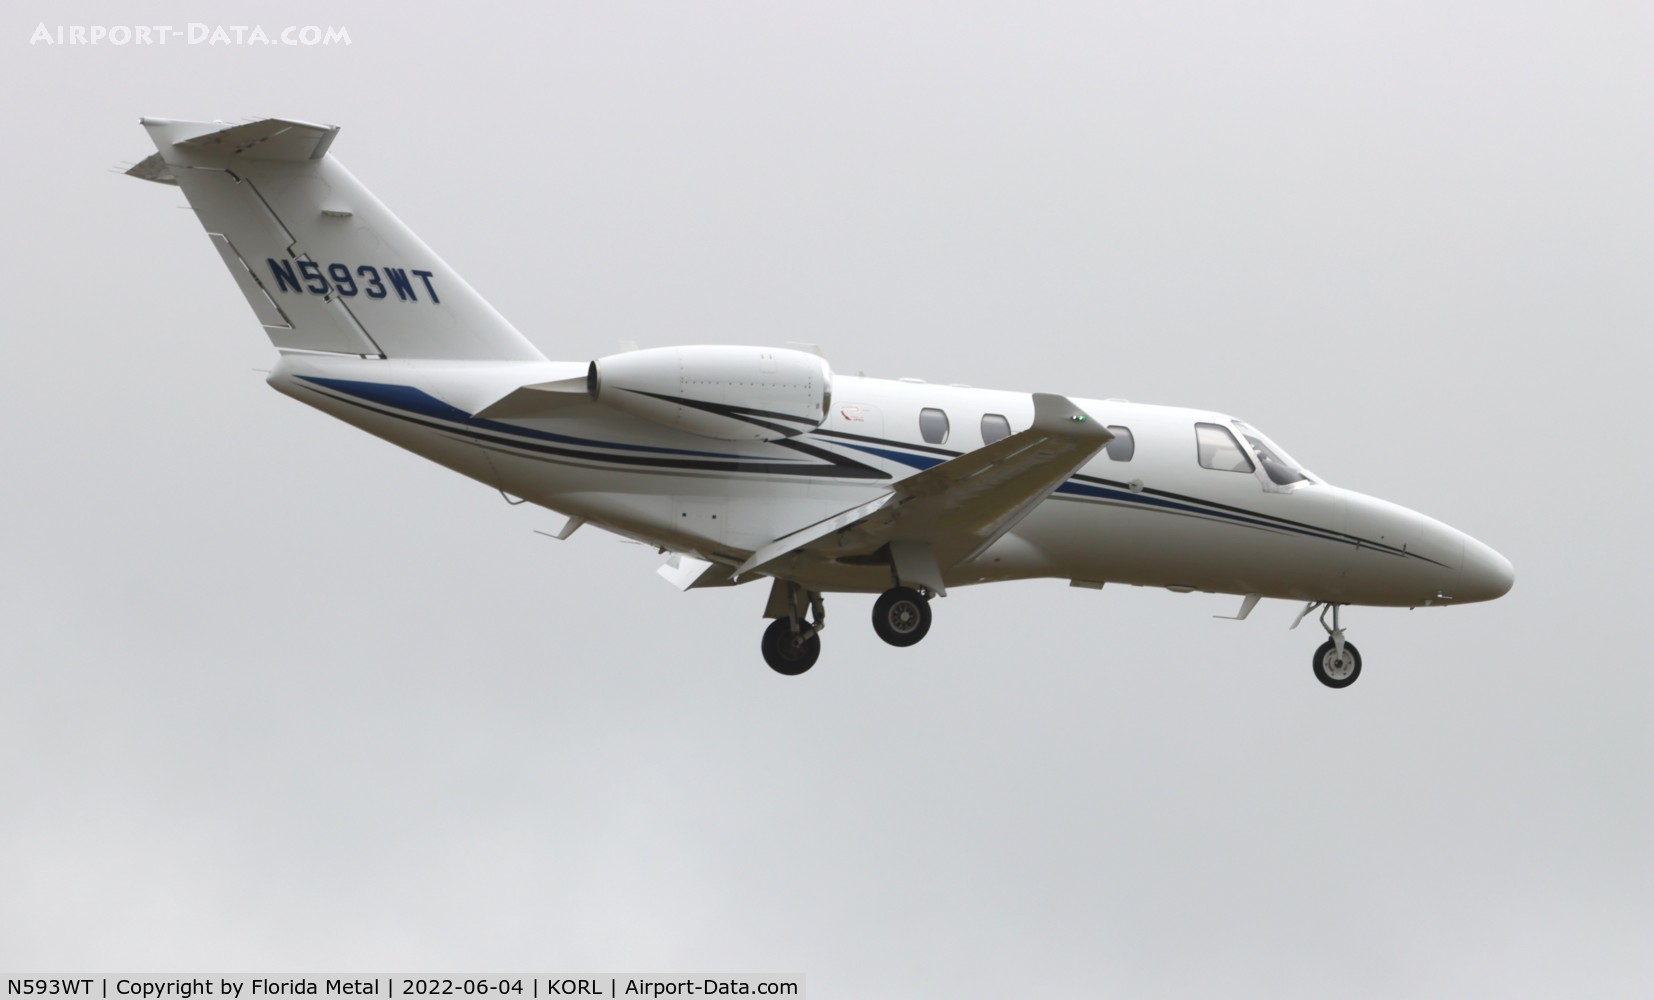 N593WT, 2014 Cessna 525 Citation M2 C/N 525-0839, Citation M2